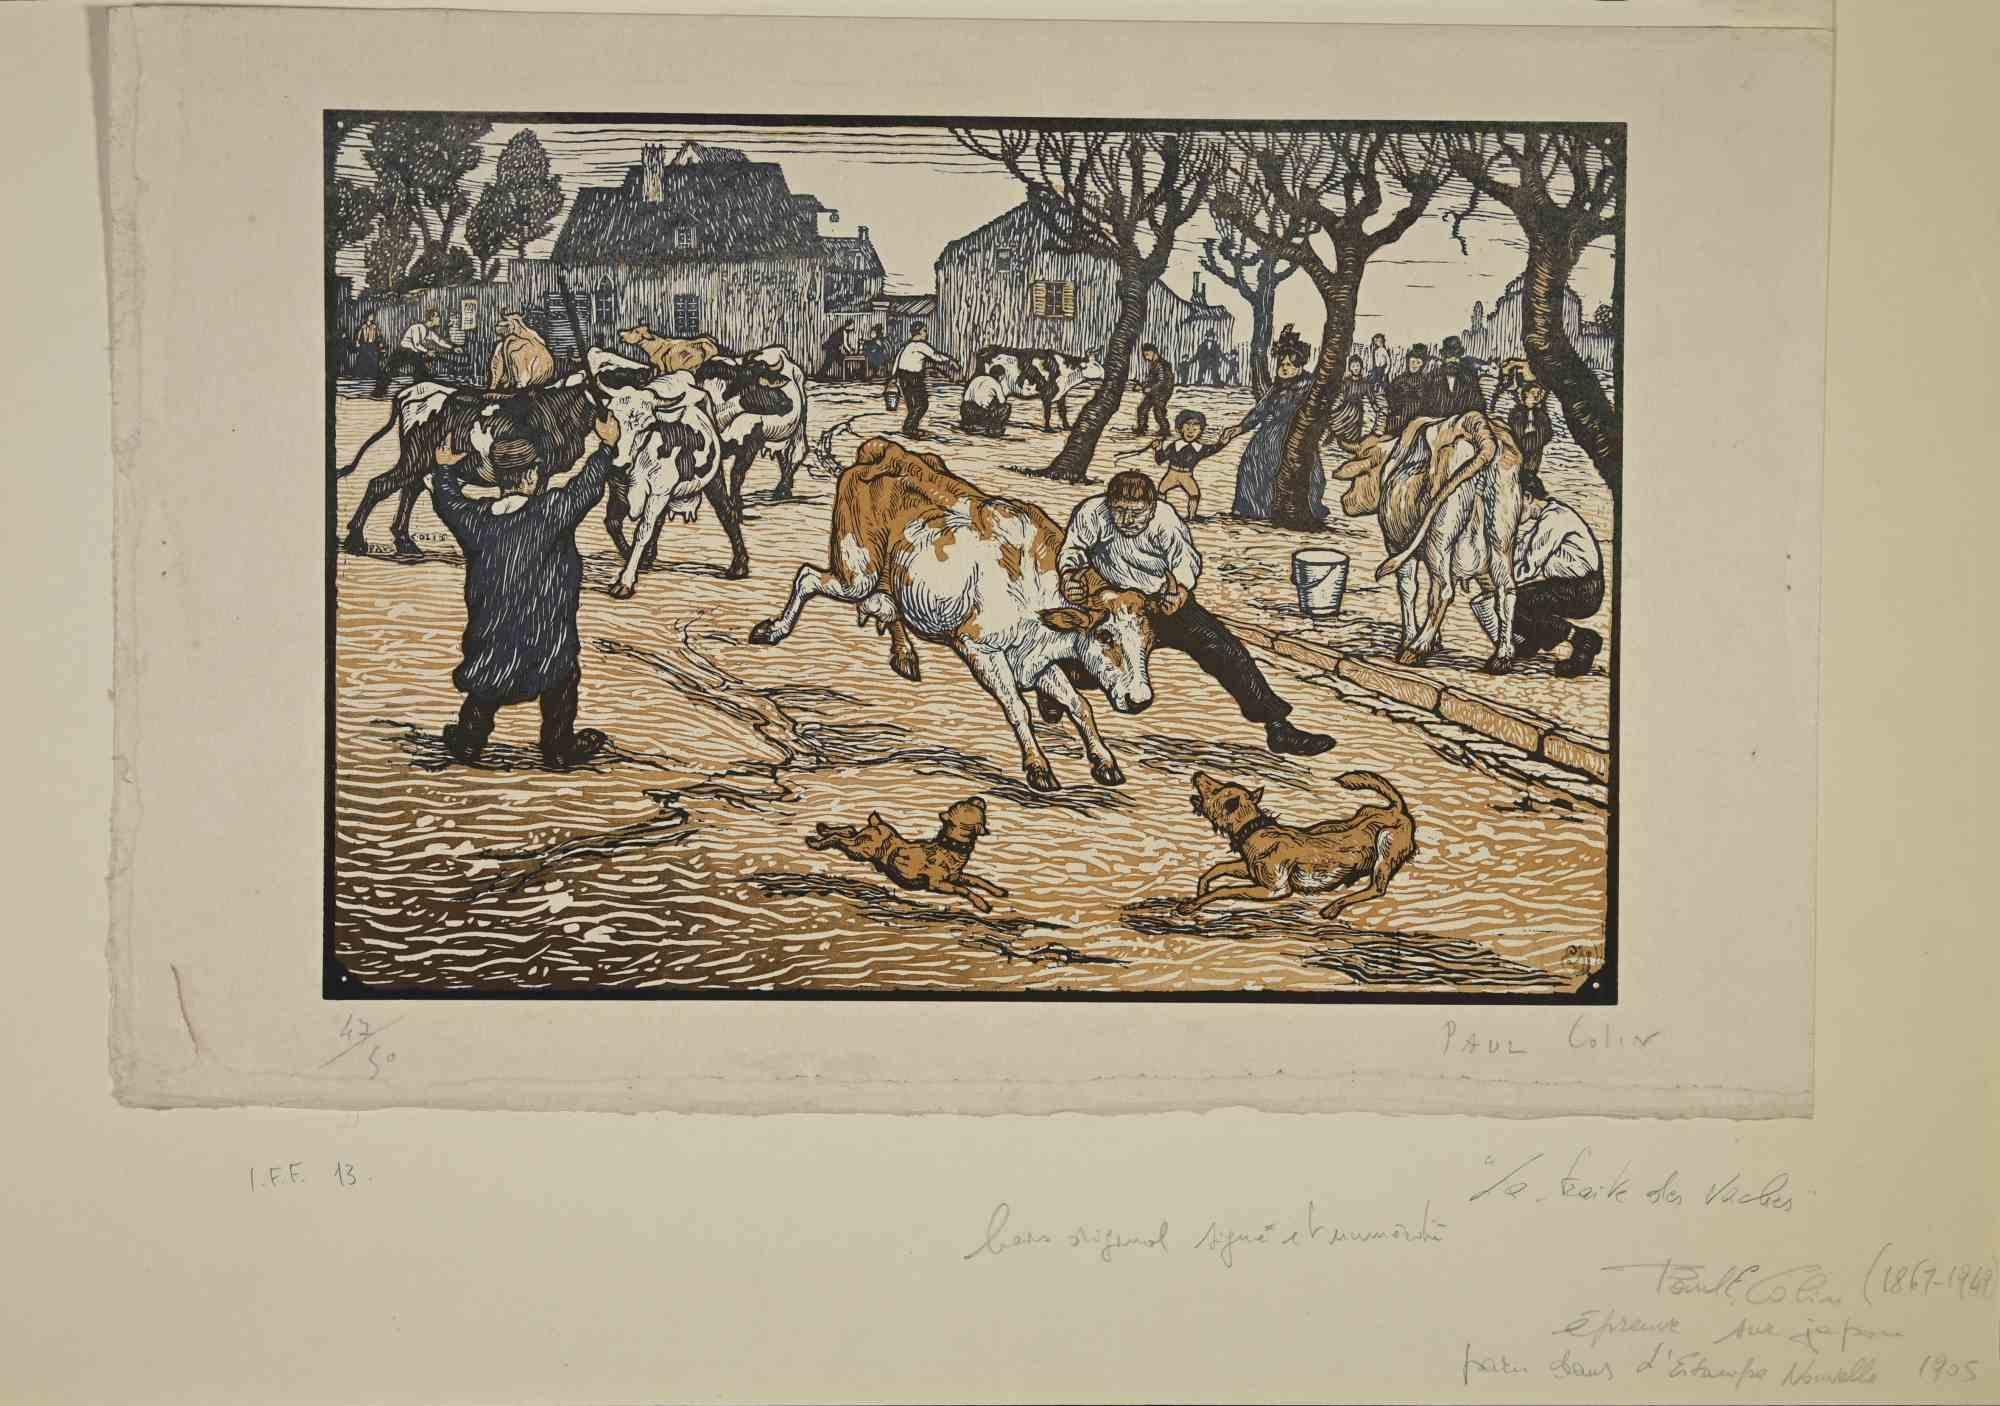 La Traite des Vaches ist ein Kunstwerk des französischen Künstlers Paul Emile Colin aus dem Jahr 1905.

Farbiger Holzschnitt auf Papier. Handsigniert in der rechten Ecke. Limitierte Auflage von 50 Stück, ex. n. 47 

Das Kunstwerk ist auf